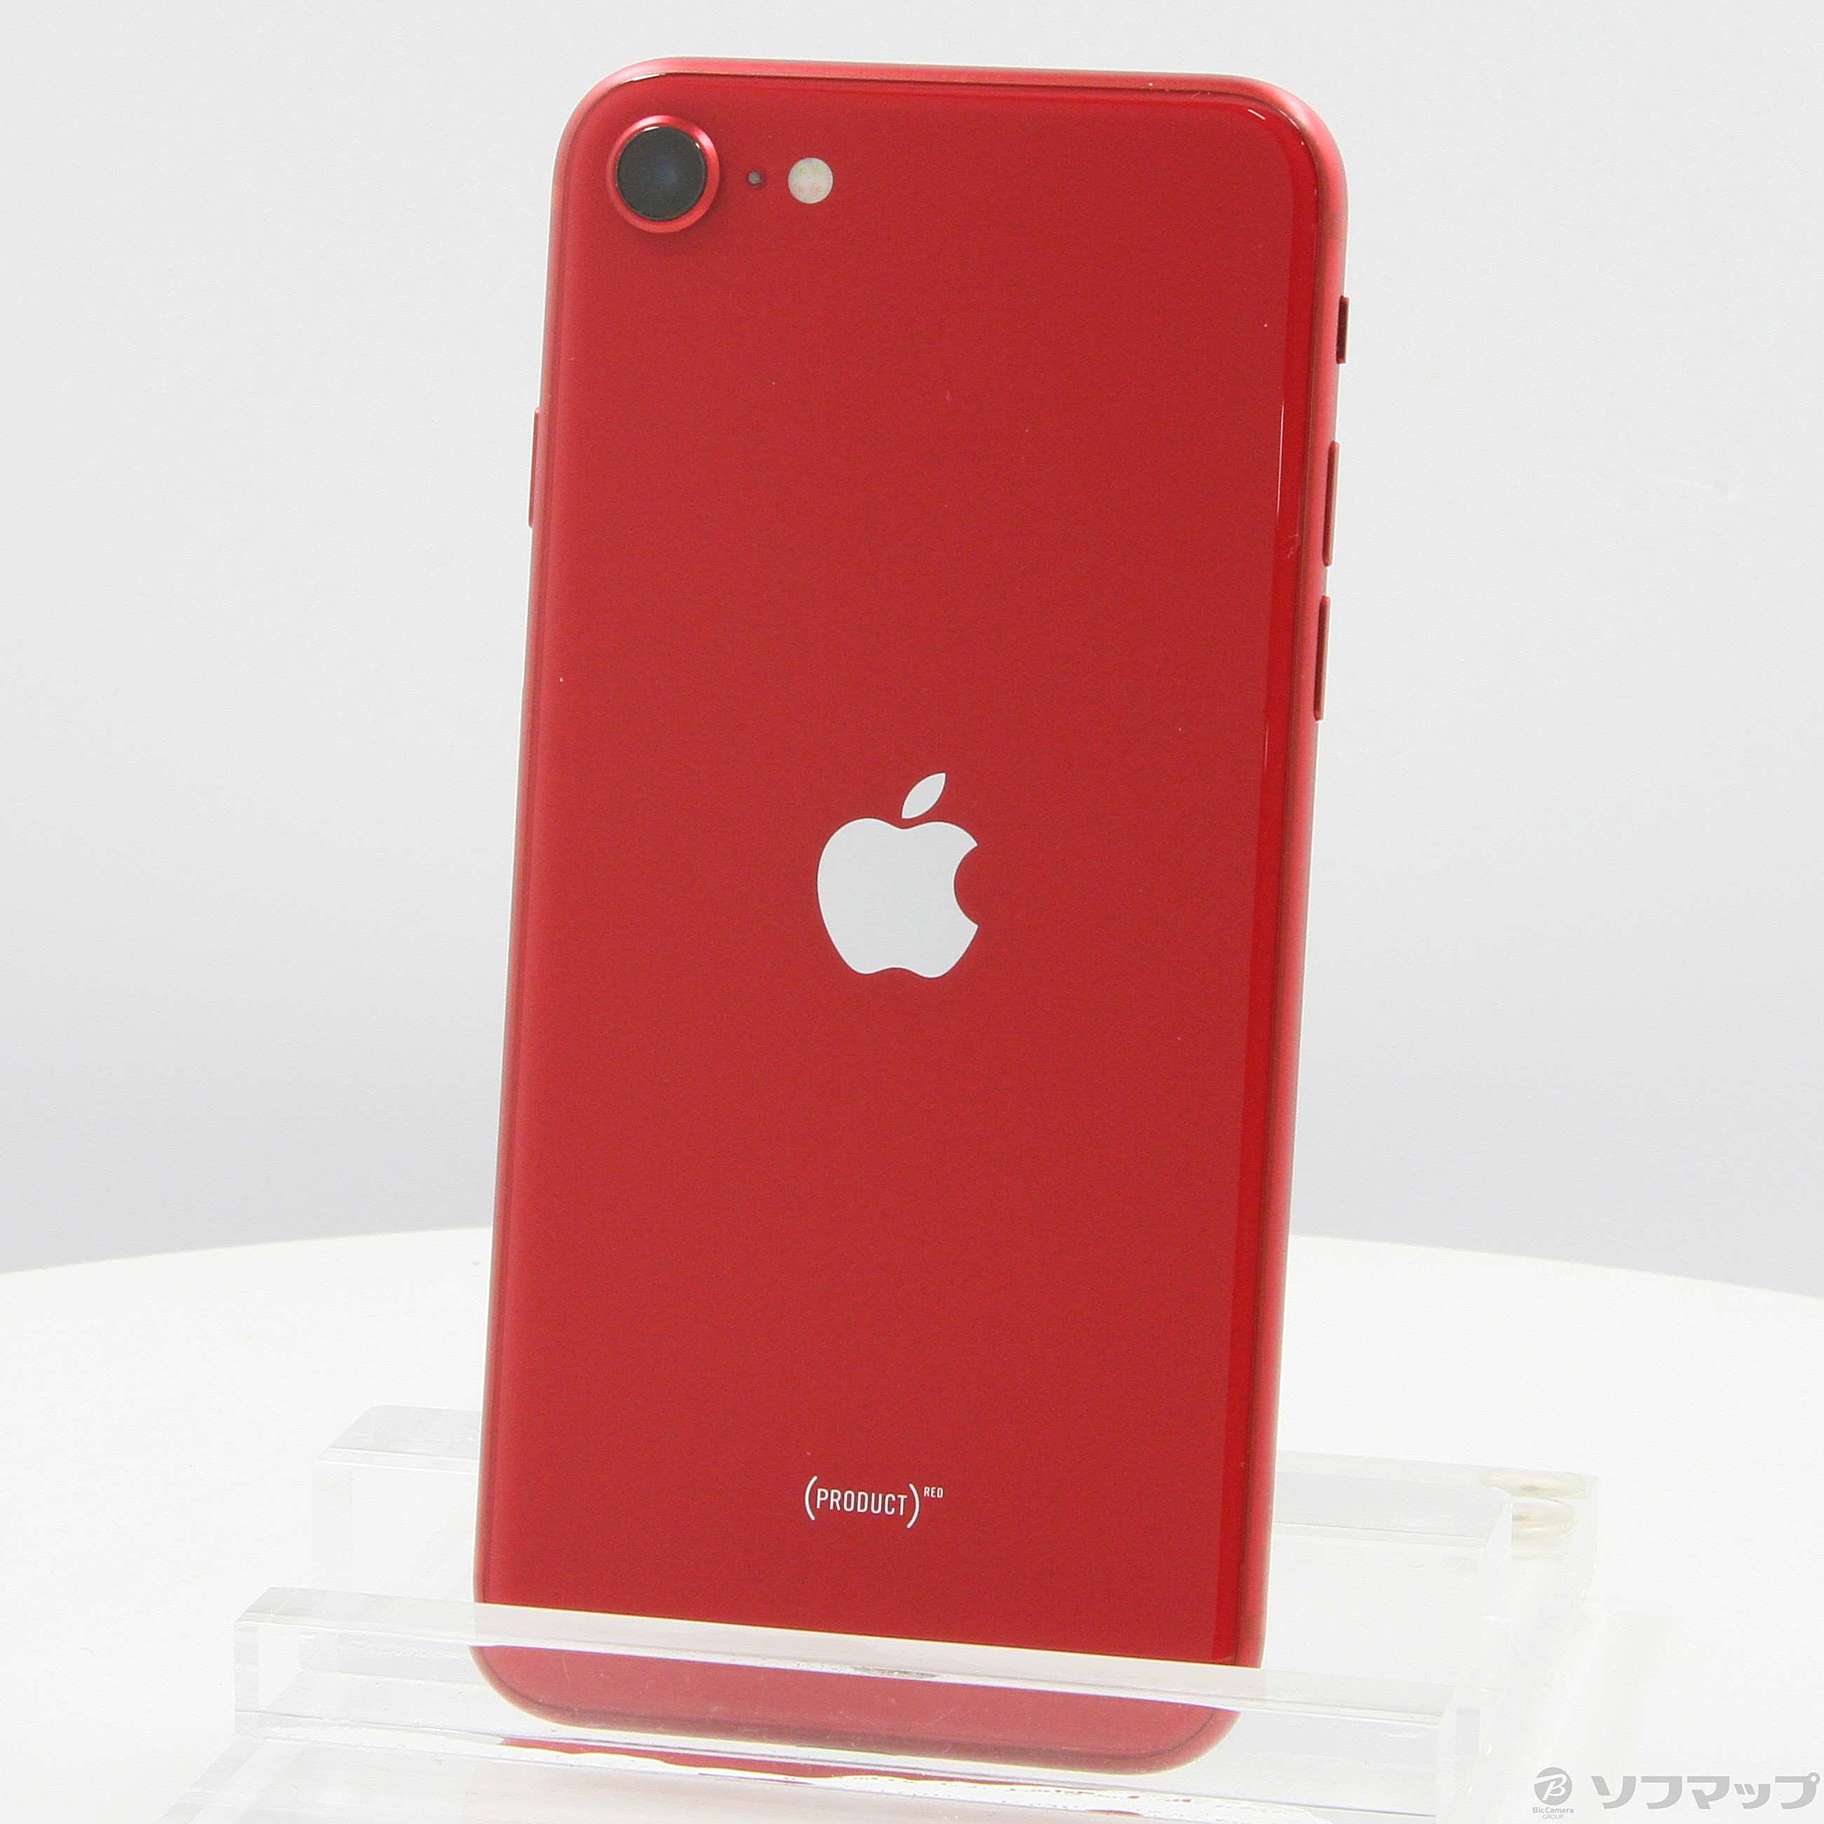 アップル iPhoneSE 第2世代 256GB レッド - スマートフォン本体